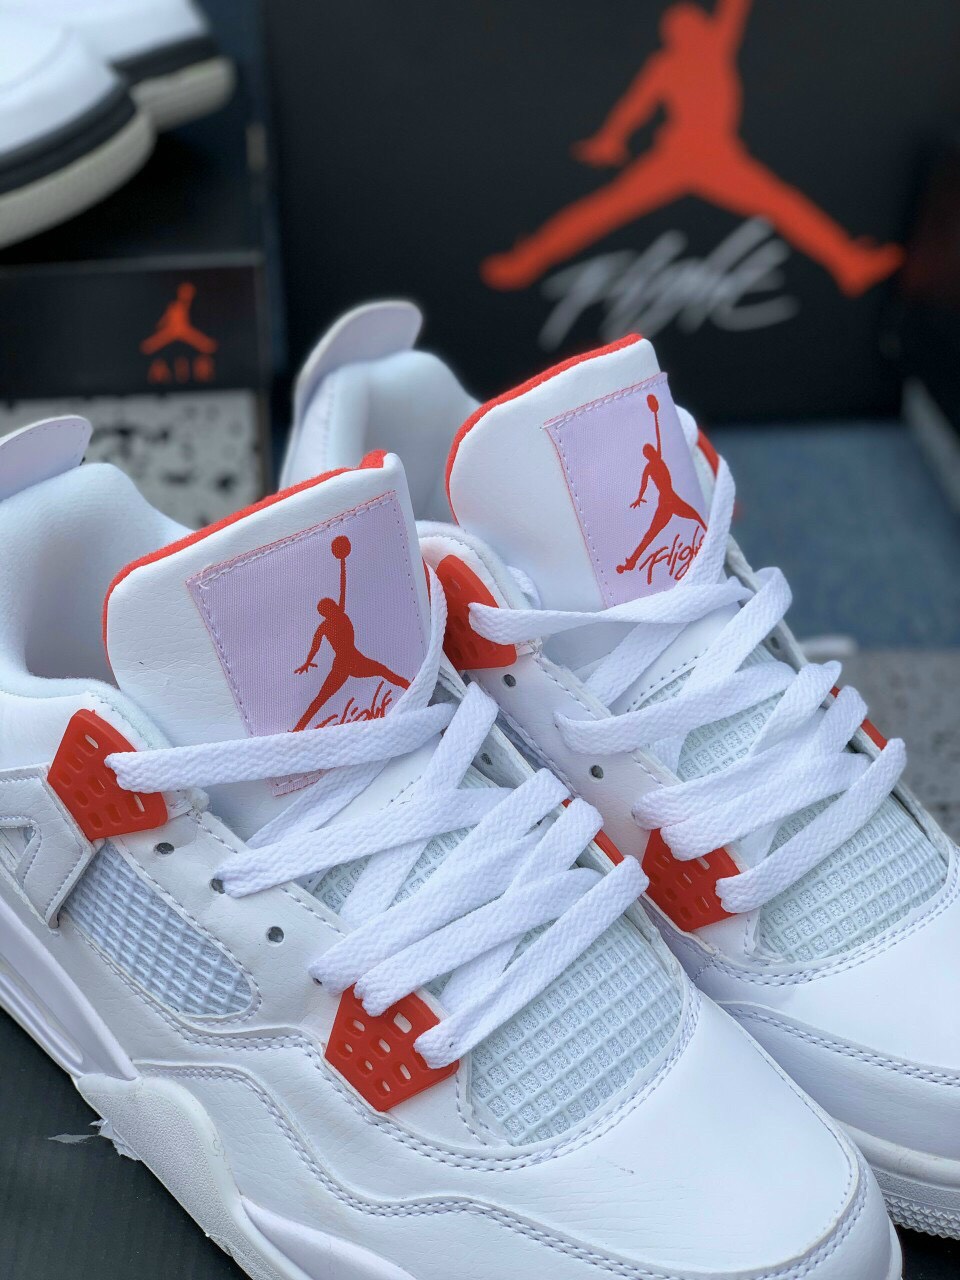 Giày Nike Air Jordan 4 Metallic Pack White Red Giày Rep 1:1